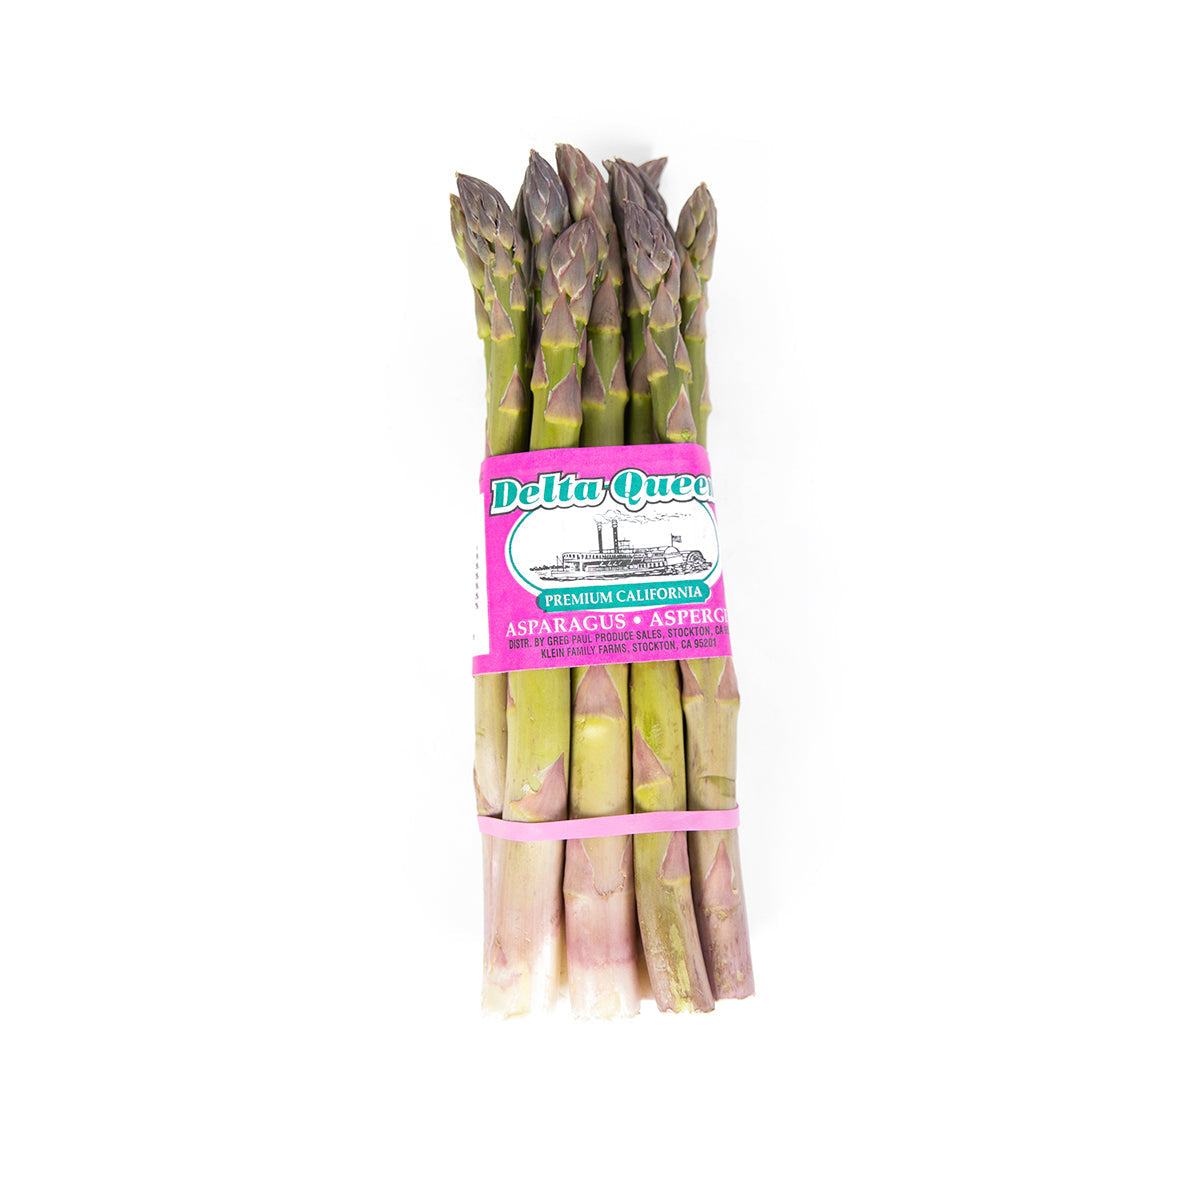 Delta Queen California Premium Jumbo Asparagus 11lb 1ct